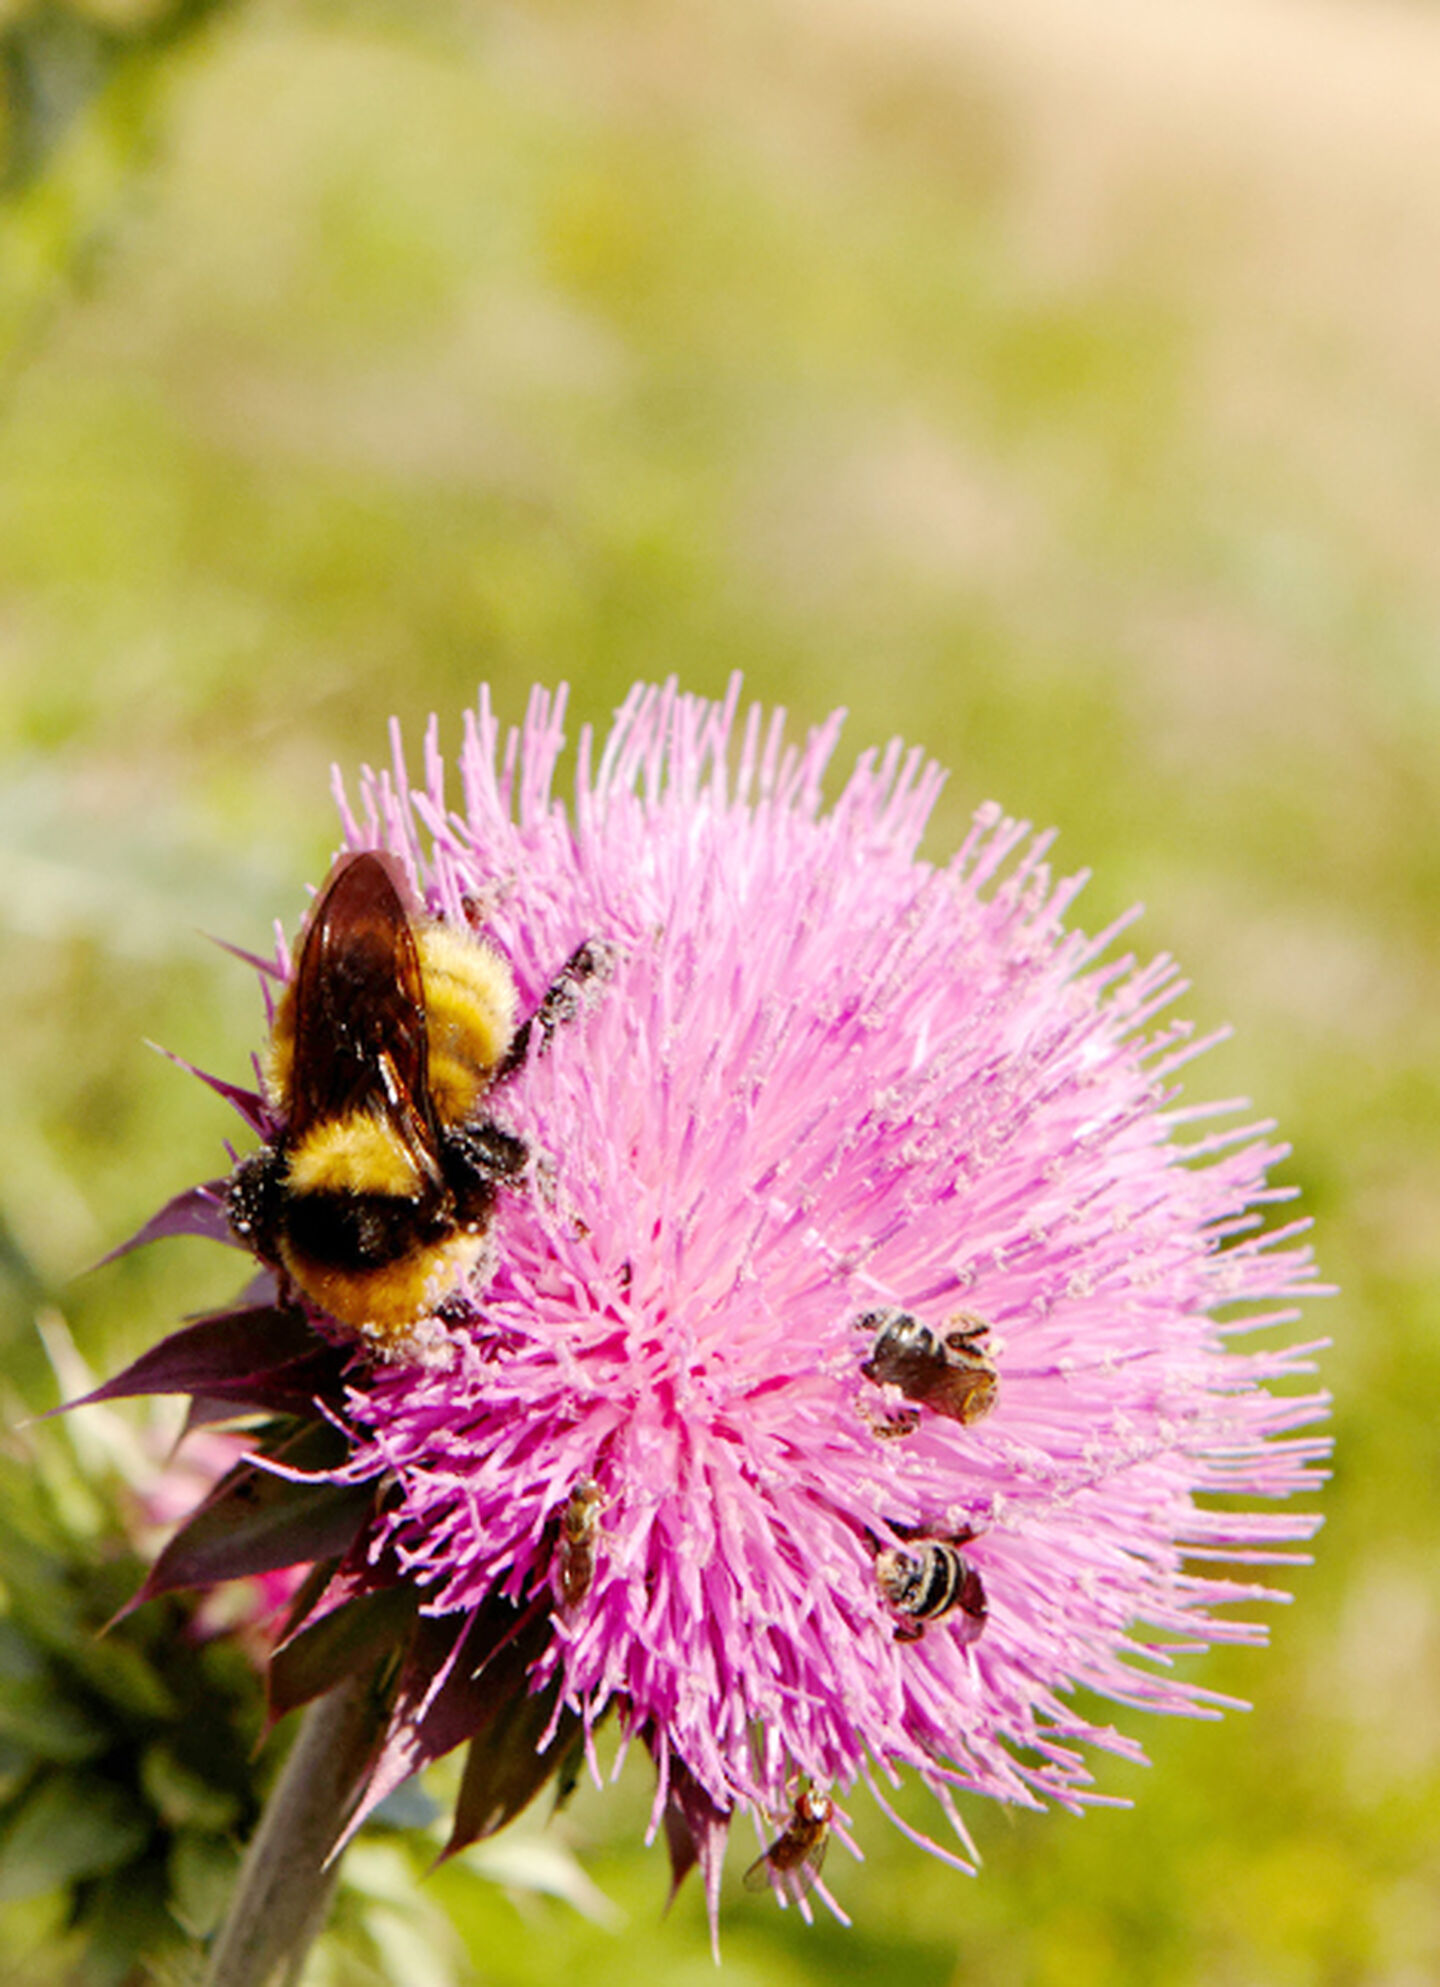 A bee crawls across a pink flower